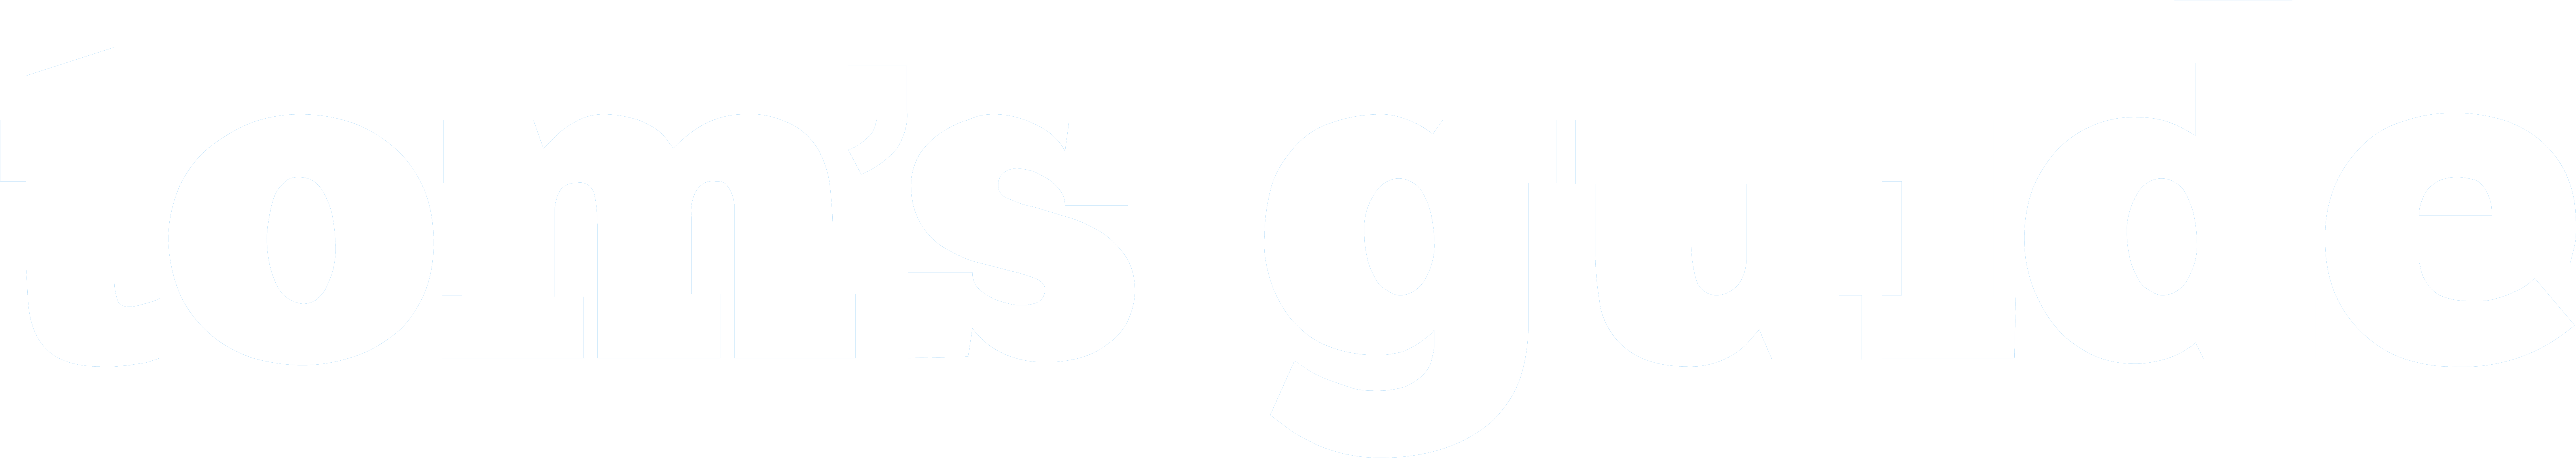 Tomsguide-marketo-white-logo.png